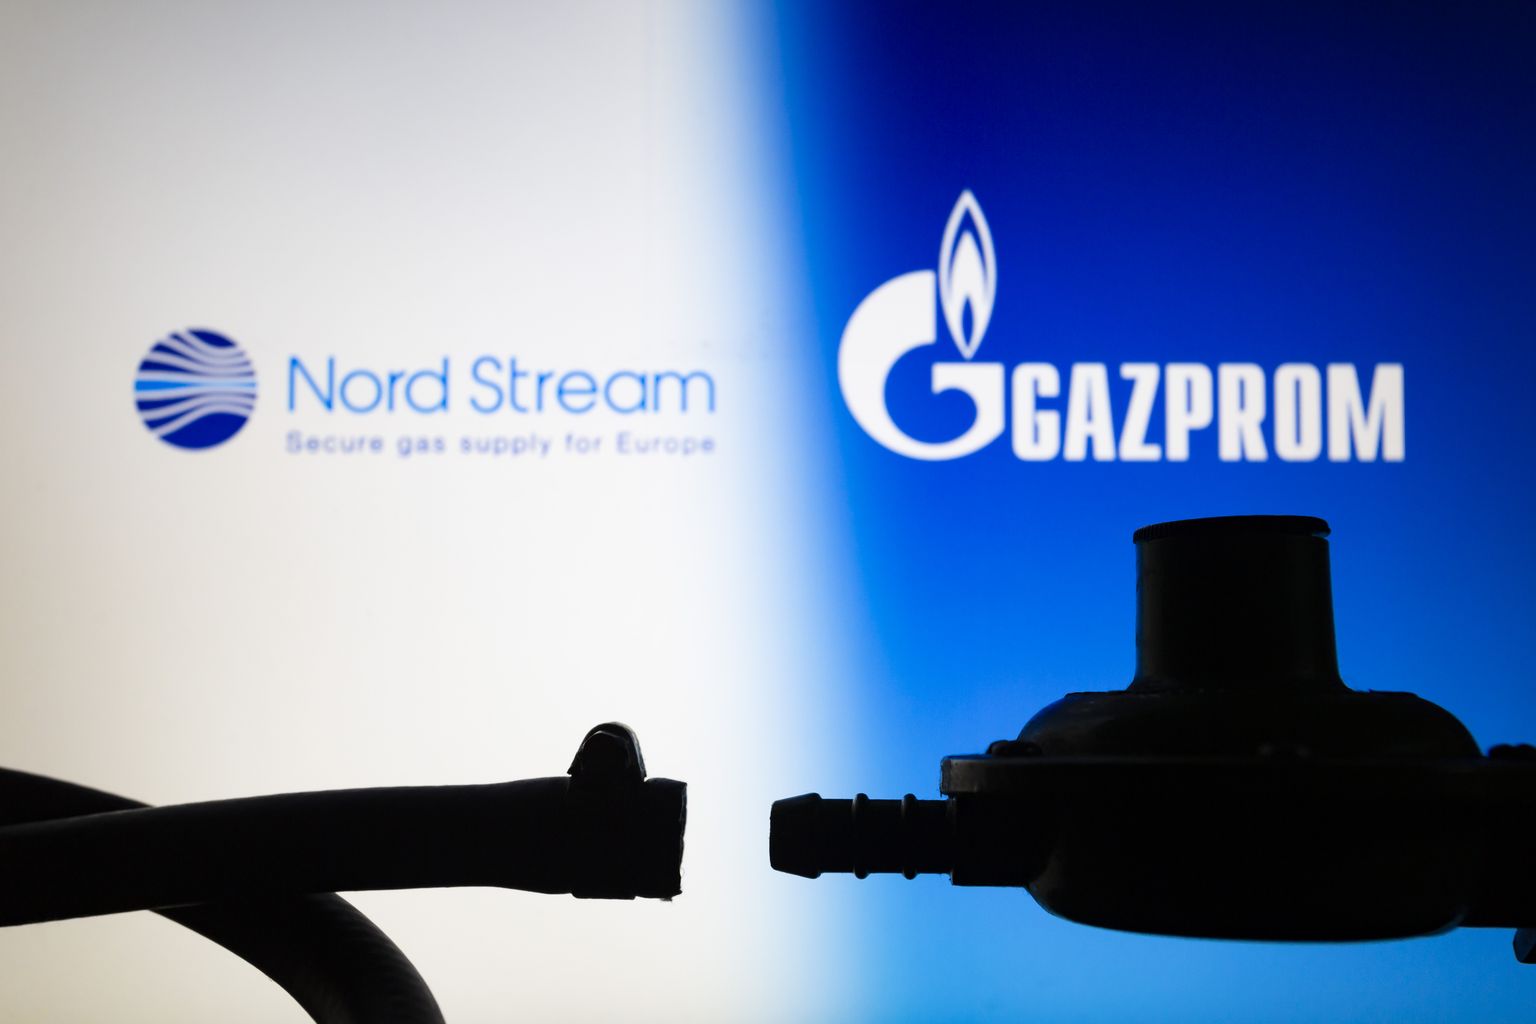 Nord Streami ja Gazpromi logod.